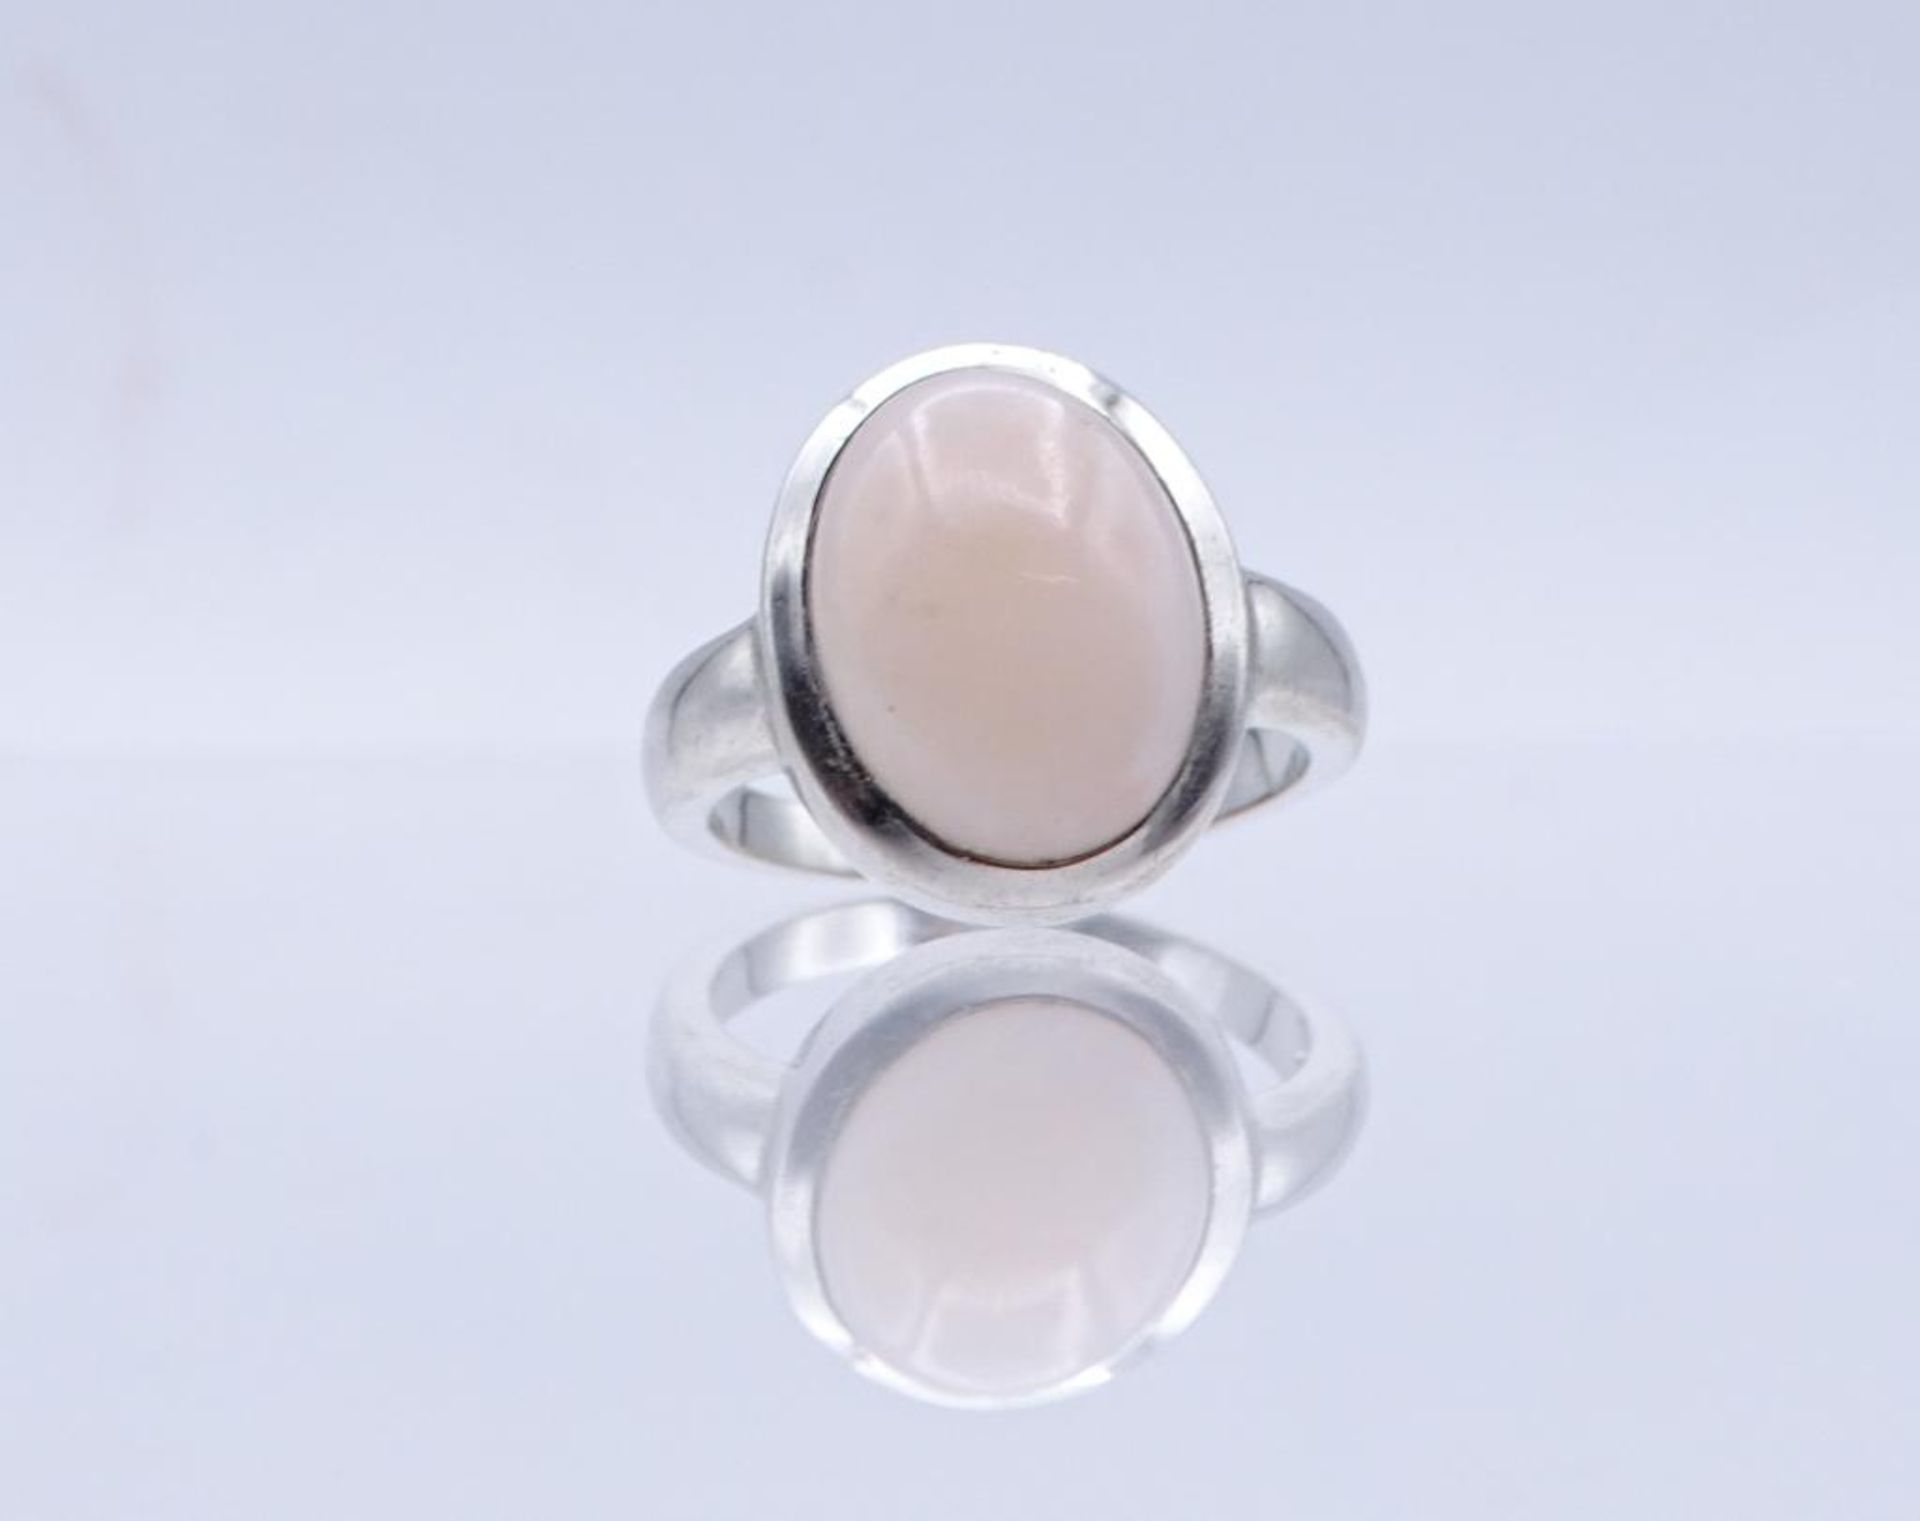 Silber Ring mit einen rosa farbigen Cabochon,Silber 925/000, 6,5gr., RG 59- - -22.61 % buyer's